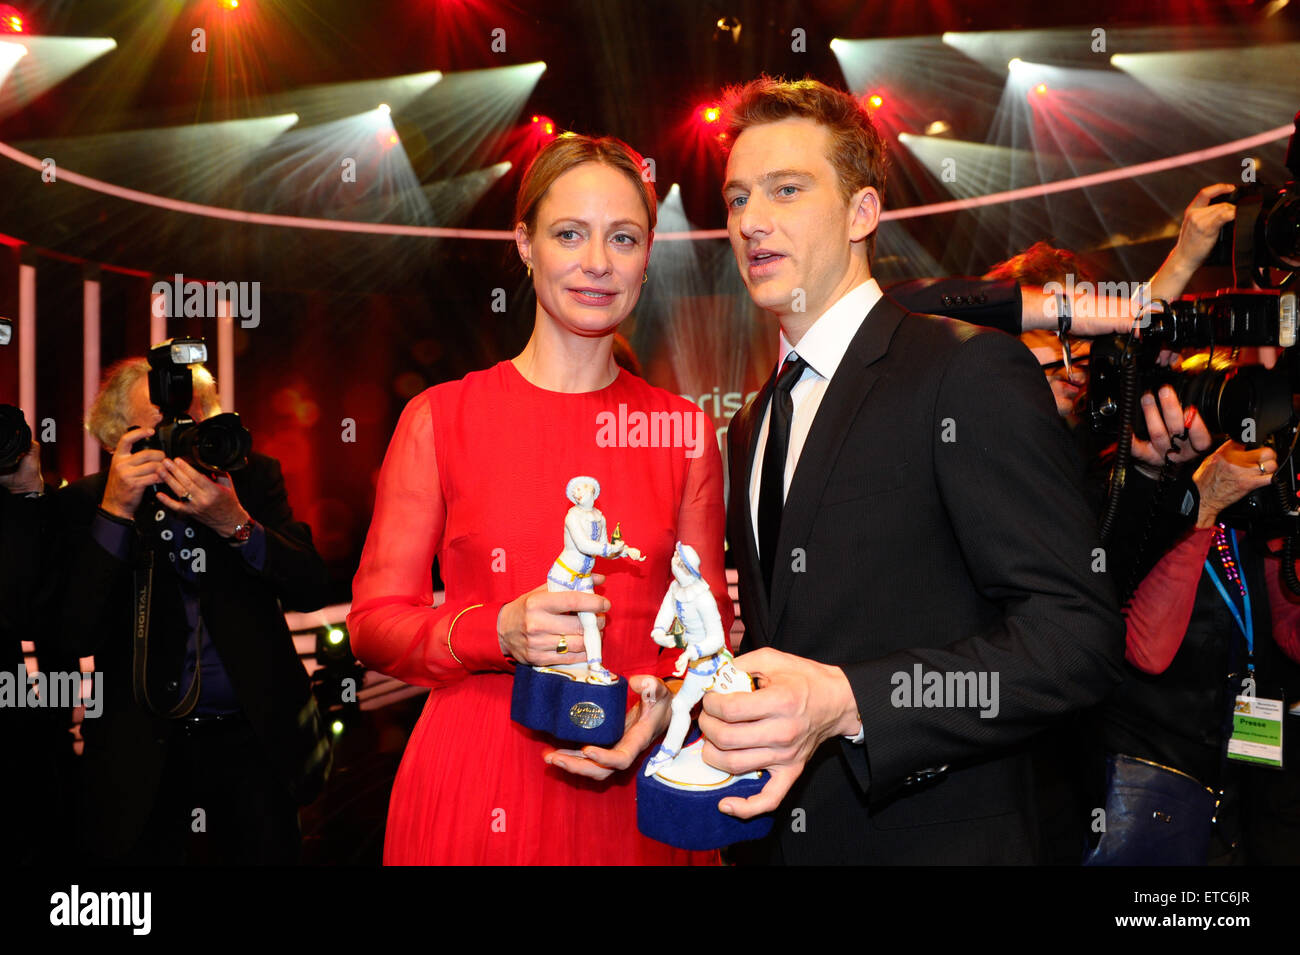 "Bayerischer Filmpreis" Award 2014 auf Prinzrengententheater mit: Katharina Marie Schubert, Alexander Fehling wo: München bei: Kredit-16. Januar 2015: Franco Gulotta/WENN.com Stockfoto